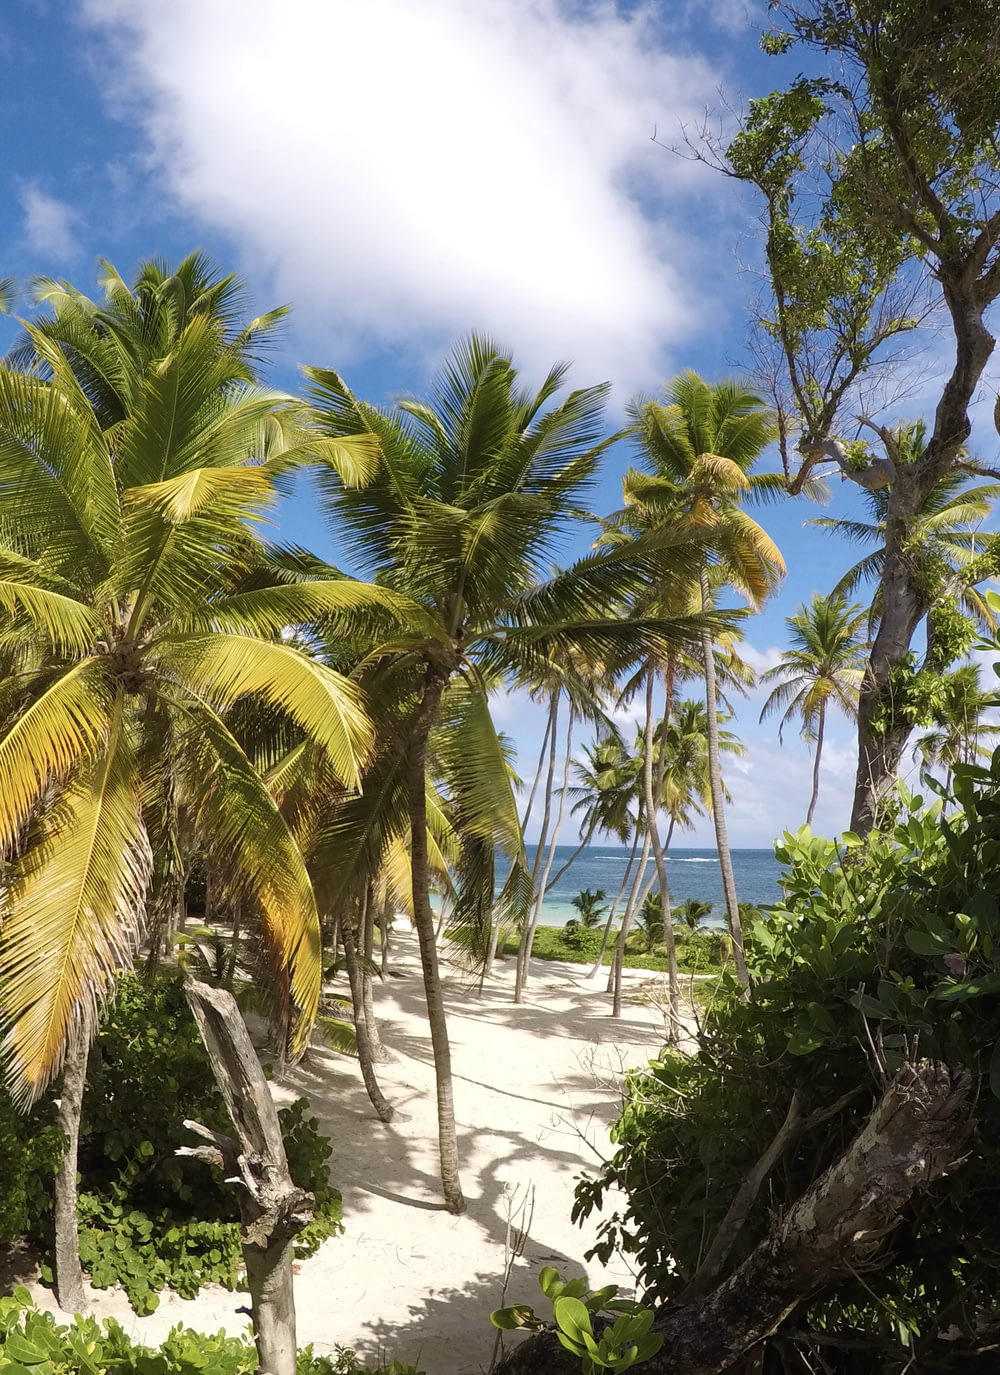 palme verdi sulla spiaggia di sabbia bianca durante il giorno